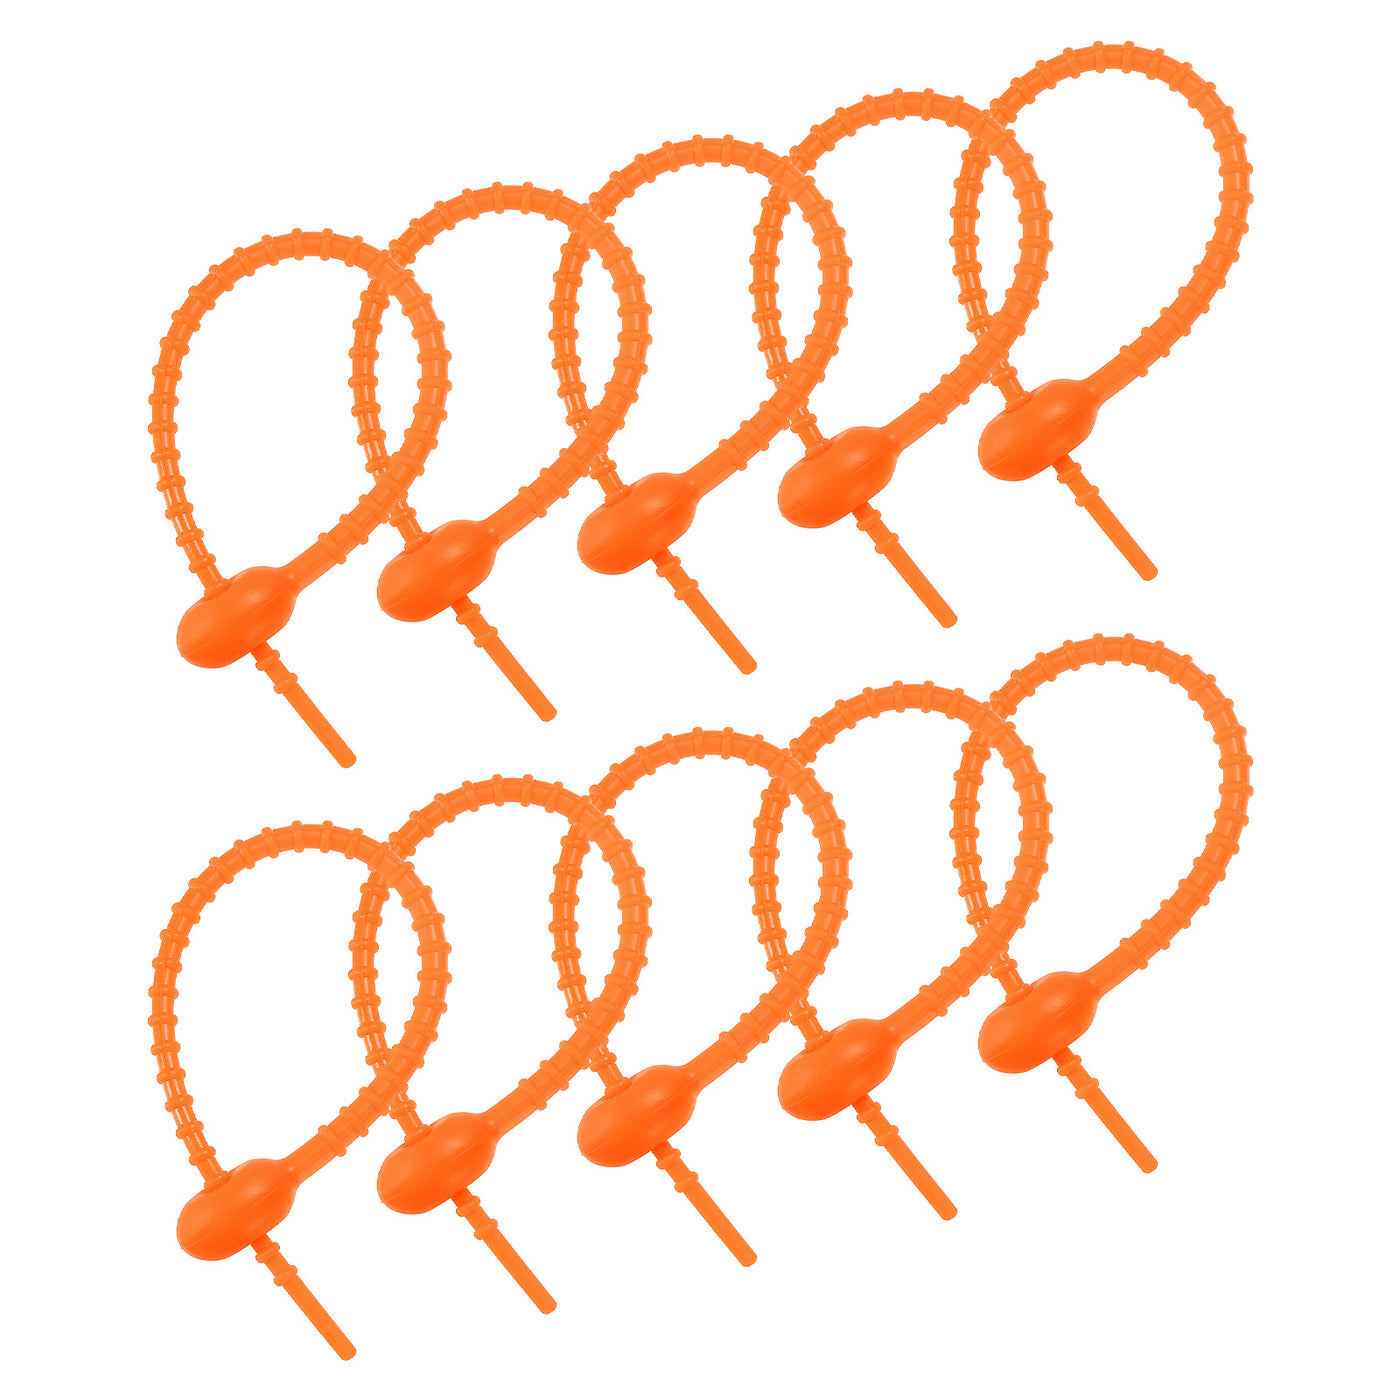 Harfington Reusable Zip Ties, 7 Inch Silicone Ties Bag Clips (Neon Orange Pack of 12)